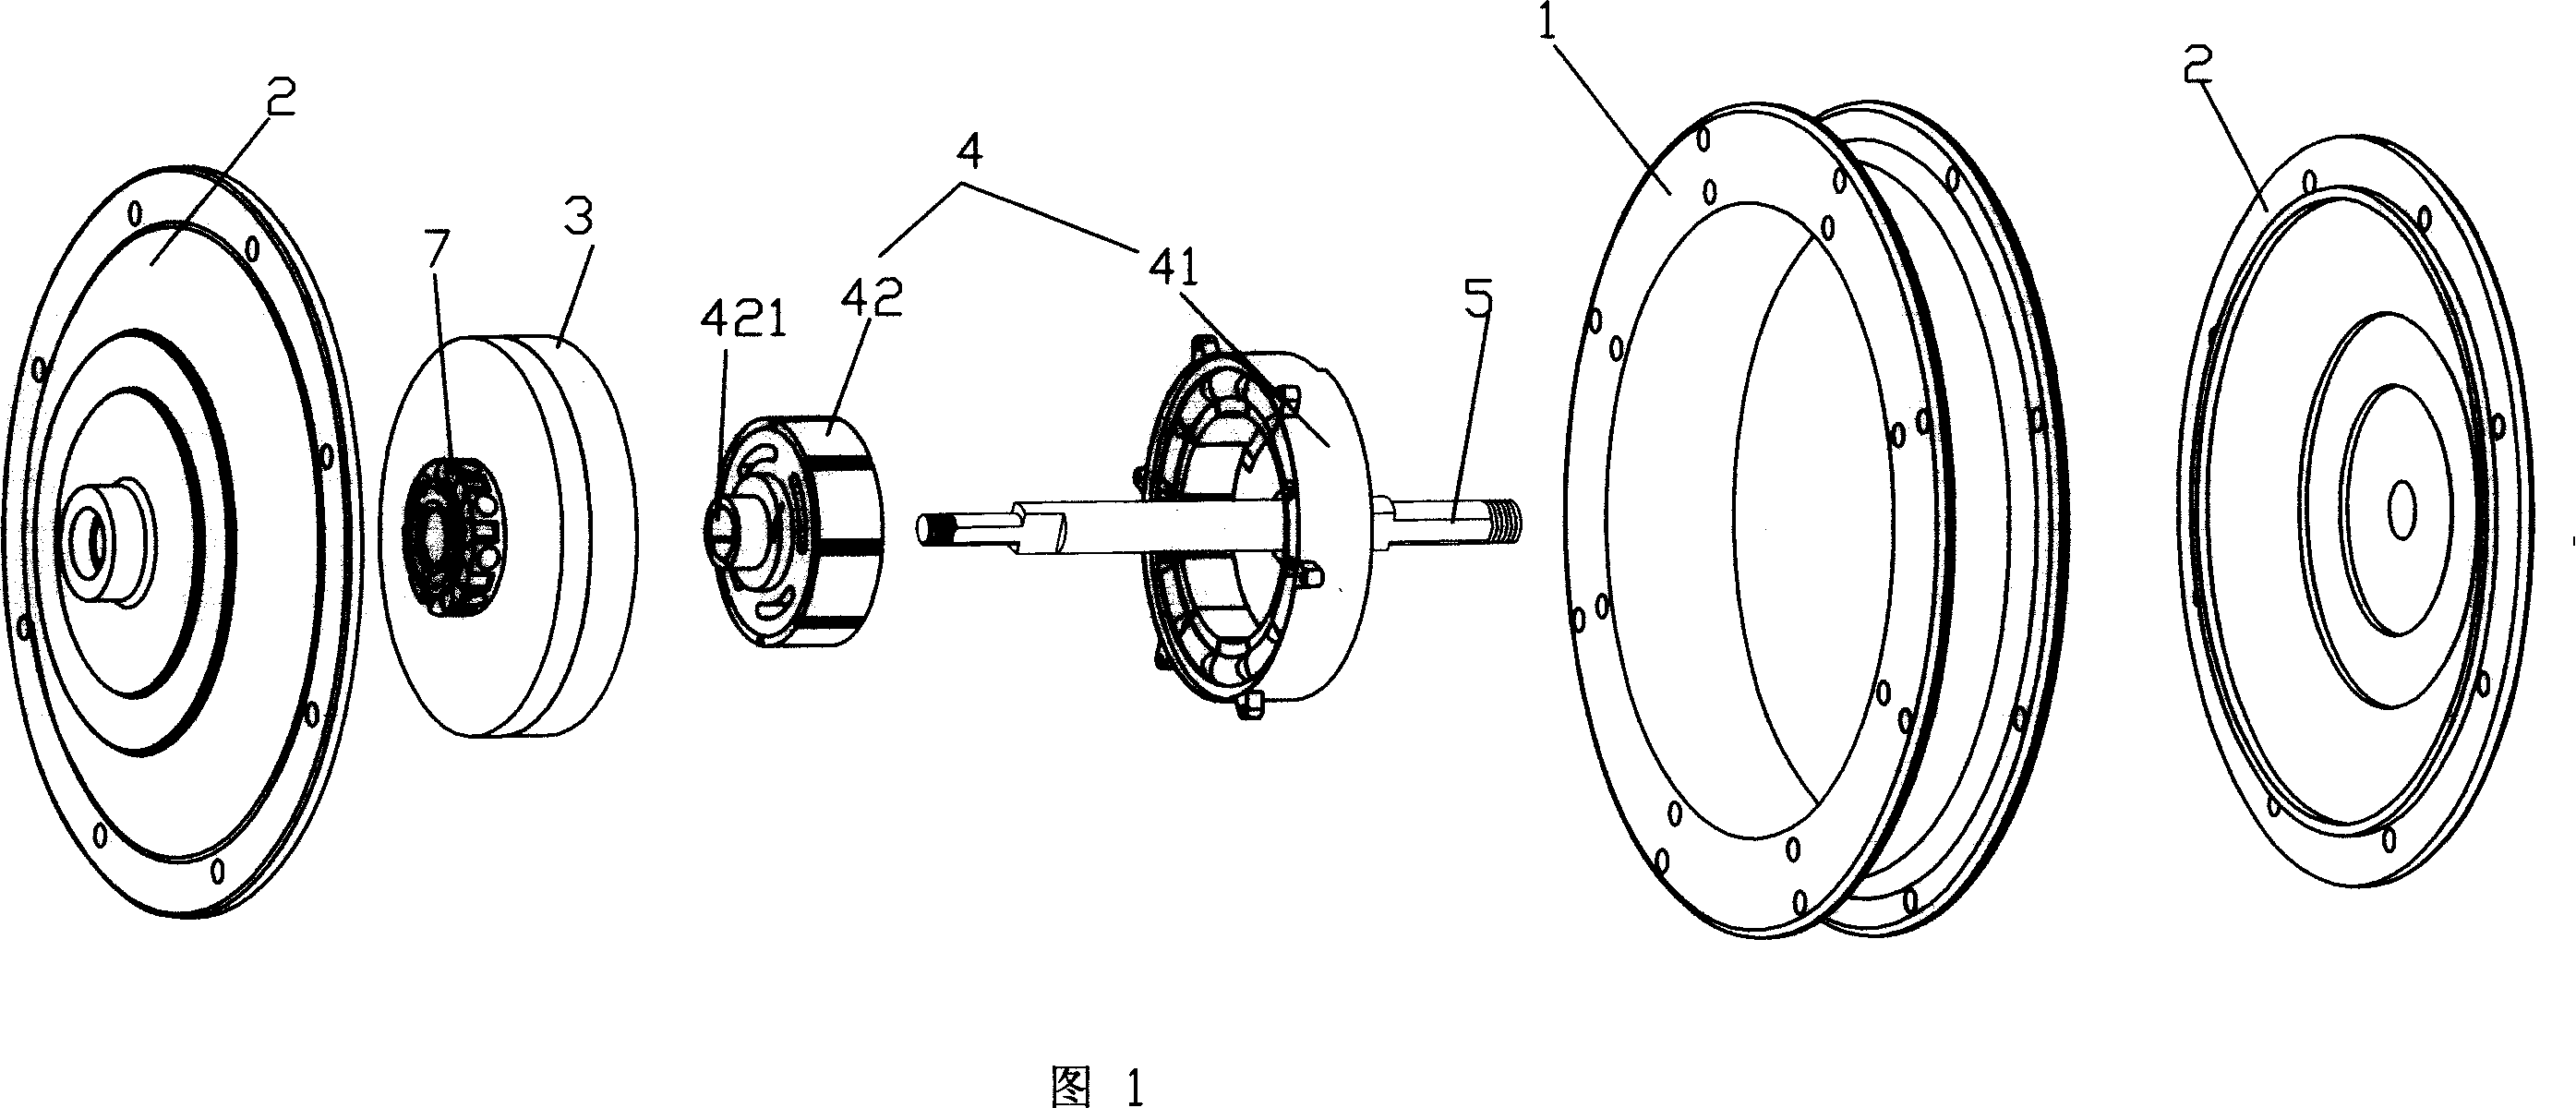 An electromotive wheel hub electromotor